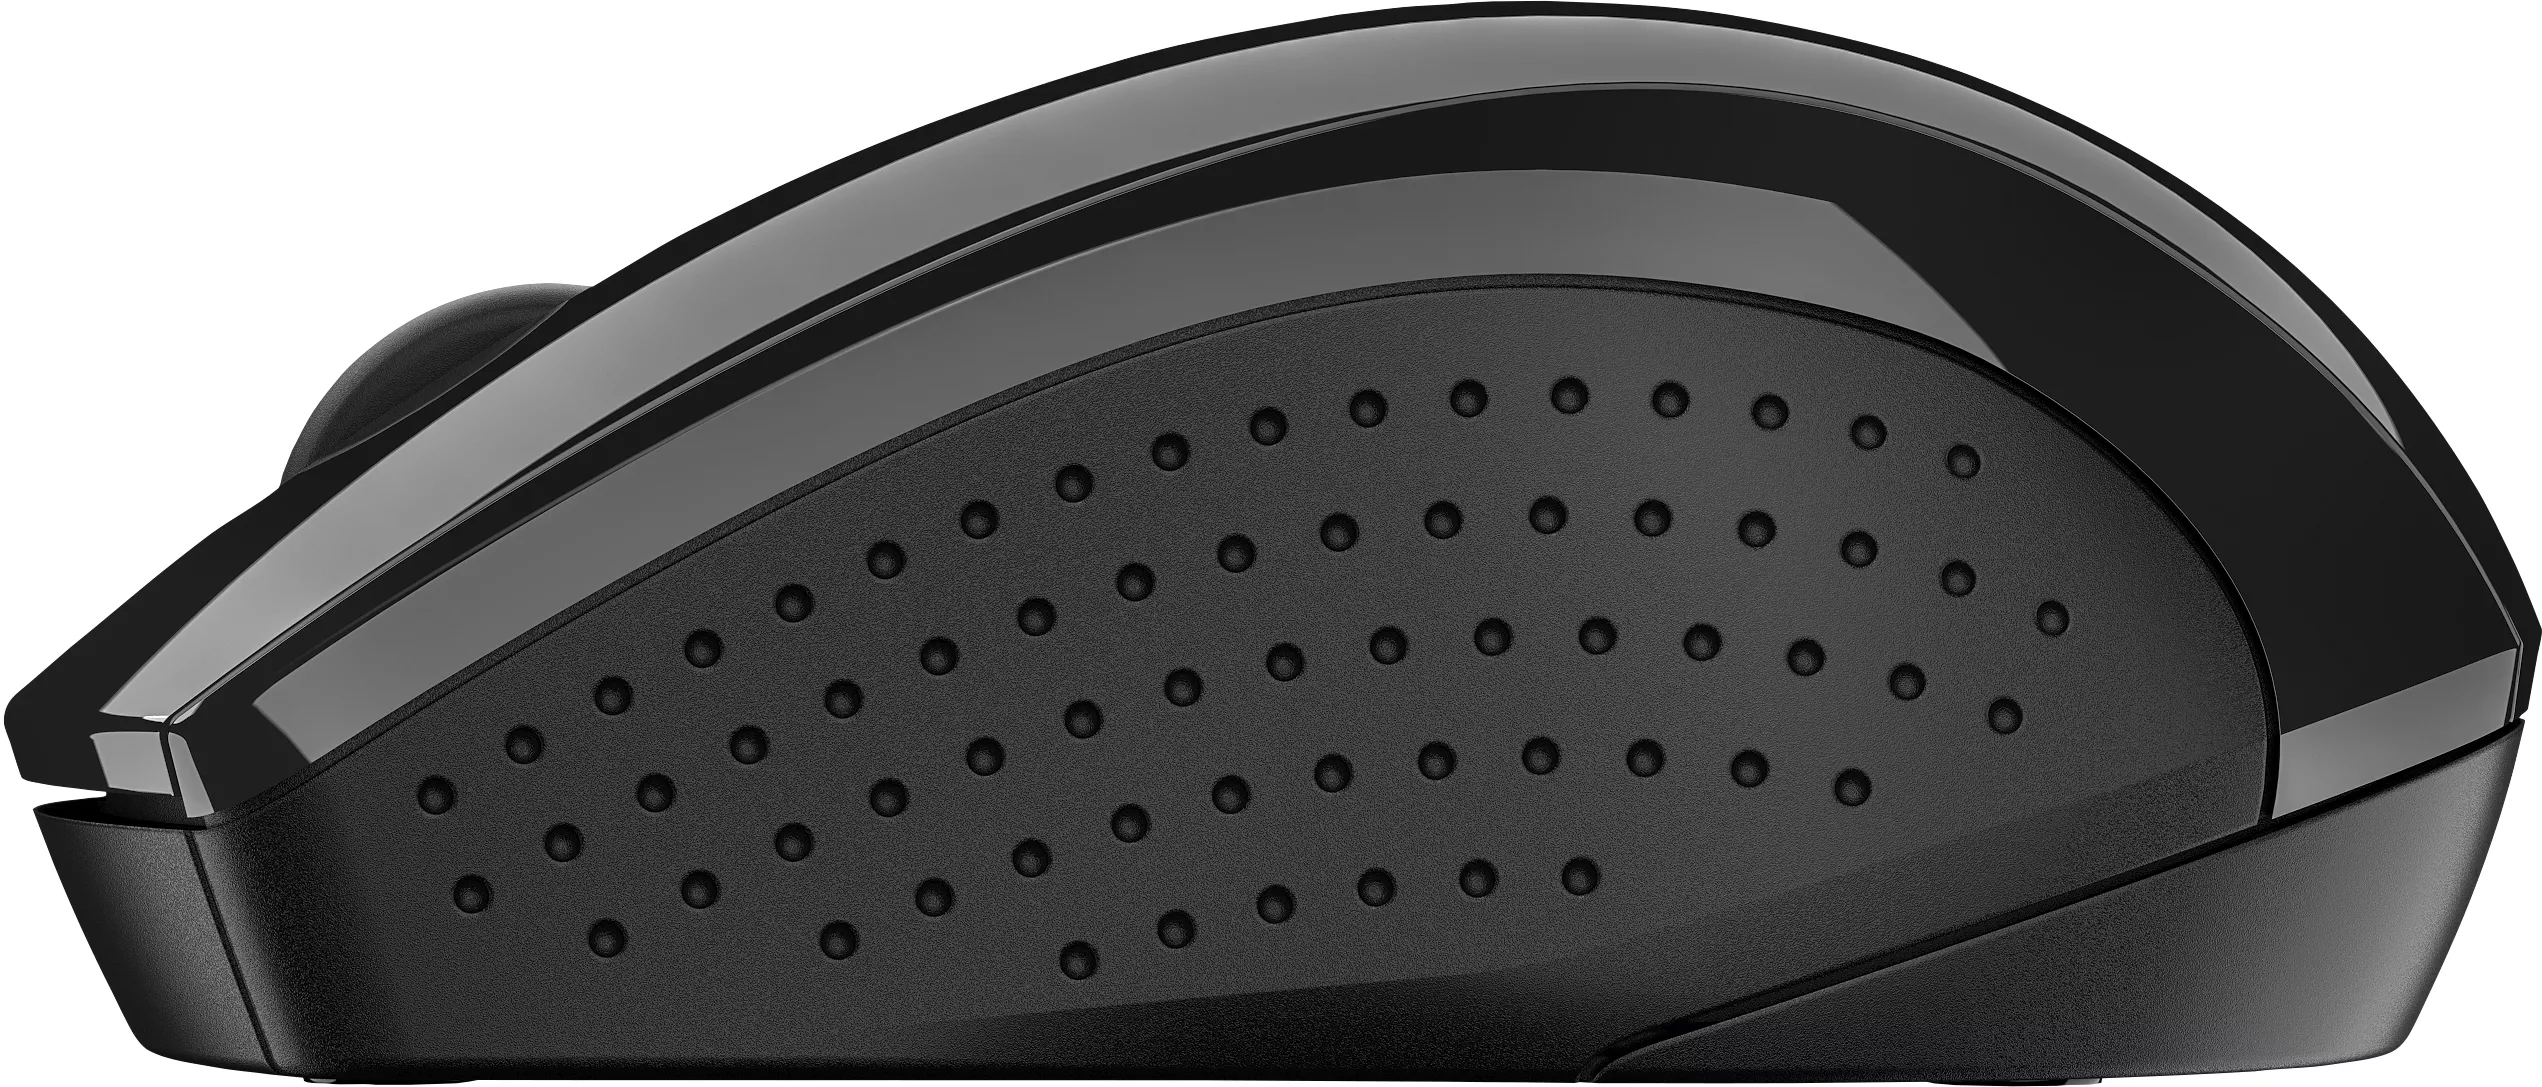 Vente HP 220 Silent Wireless Mouse HP au meilleur prix - visuel 4